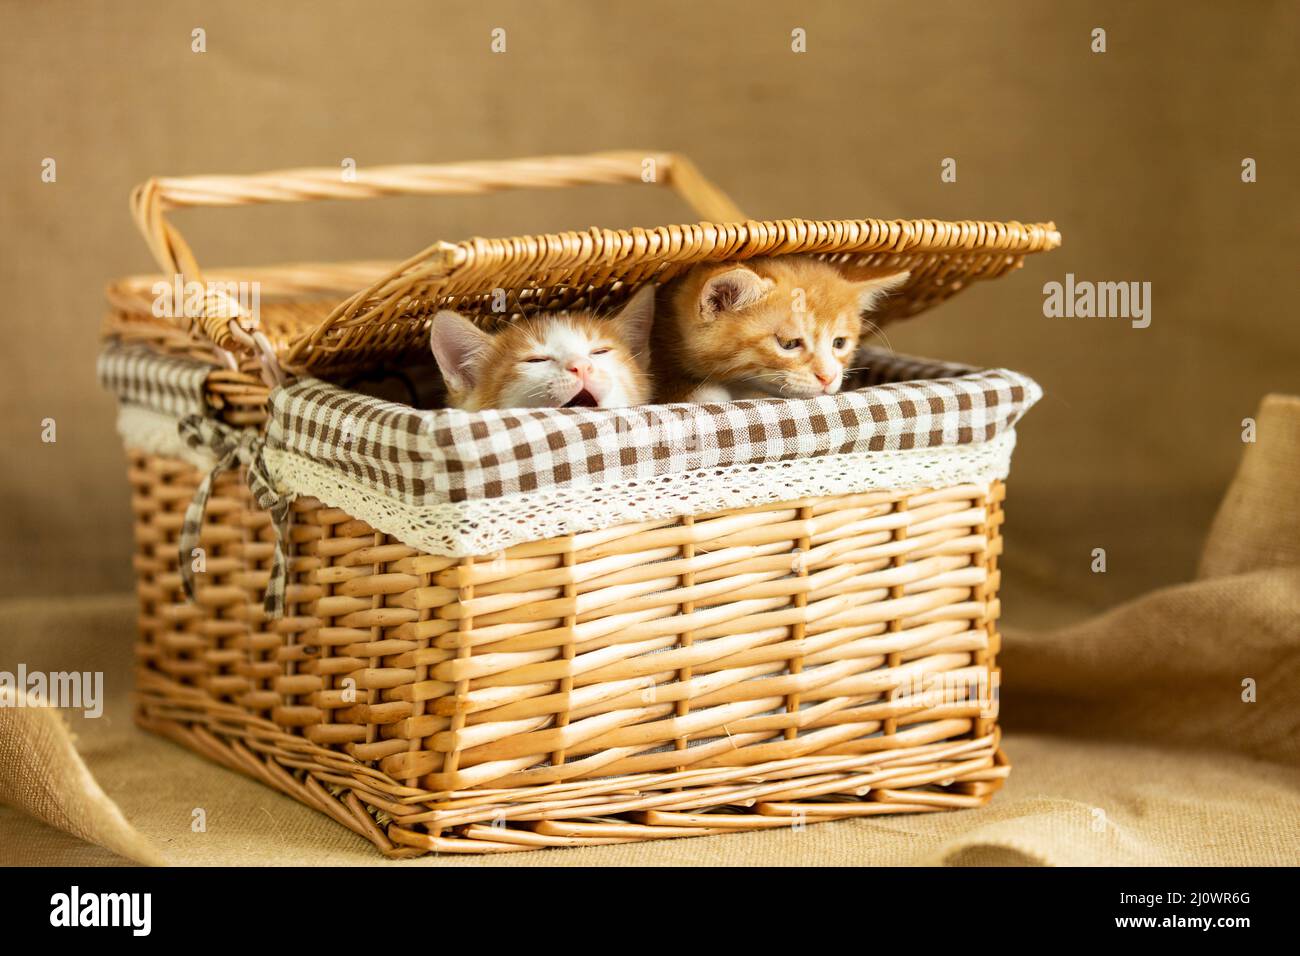 Deux chatons viennent de se réveiller dans le panier - photo de stock Banque D'Images